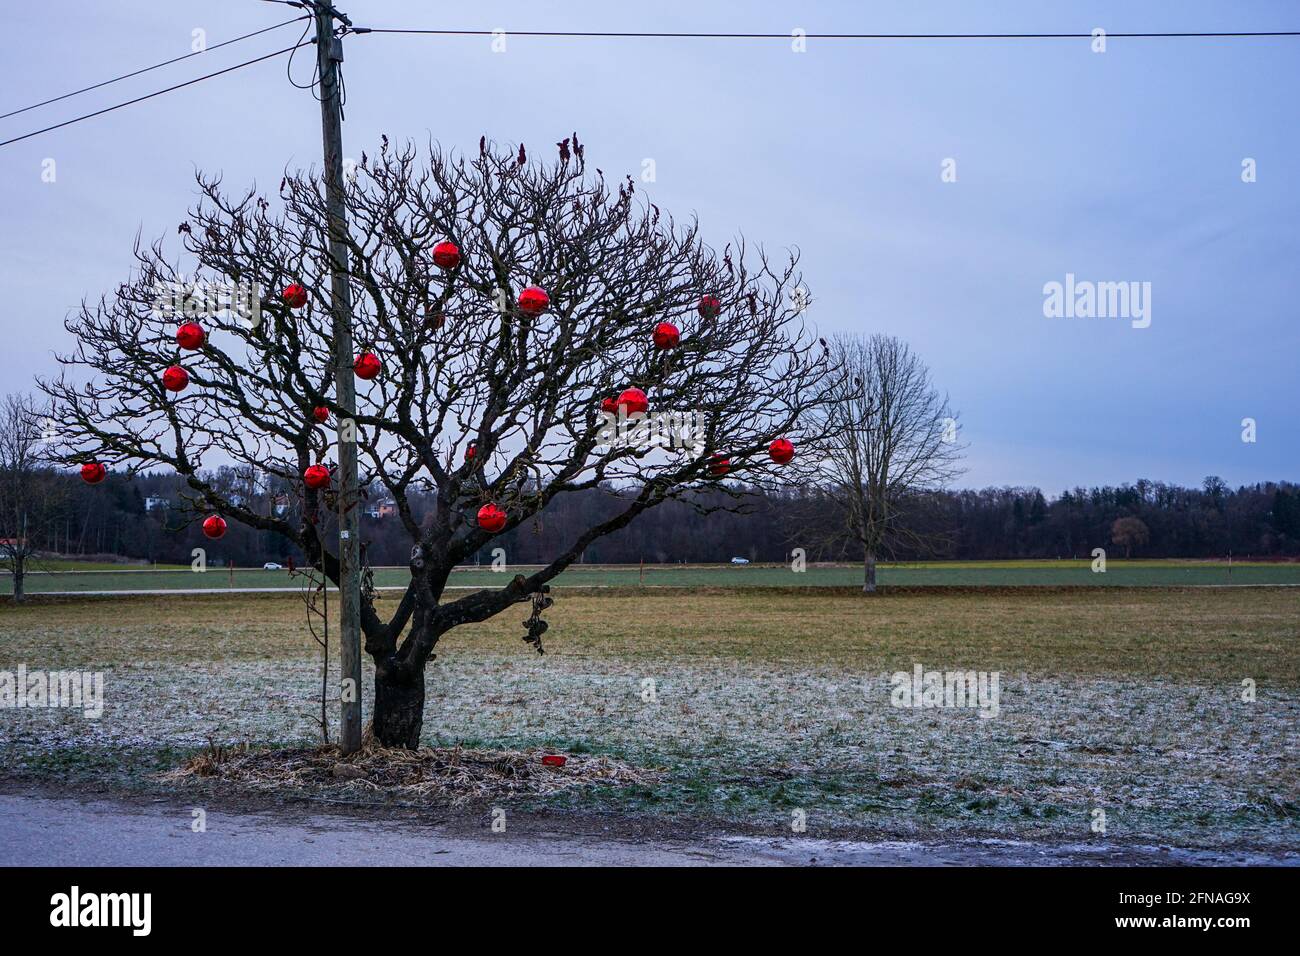 Menschen schmücken einen Baum mit Weihnachtsschmuck für Weihnachten. Stockfoto